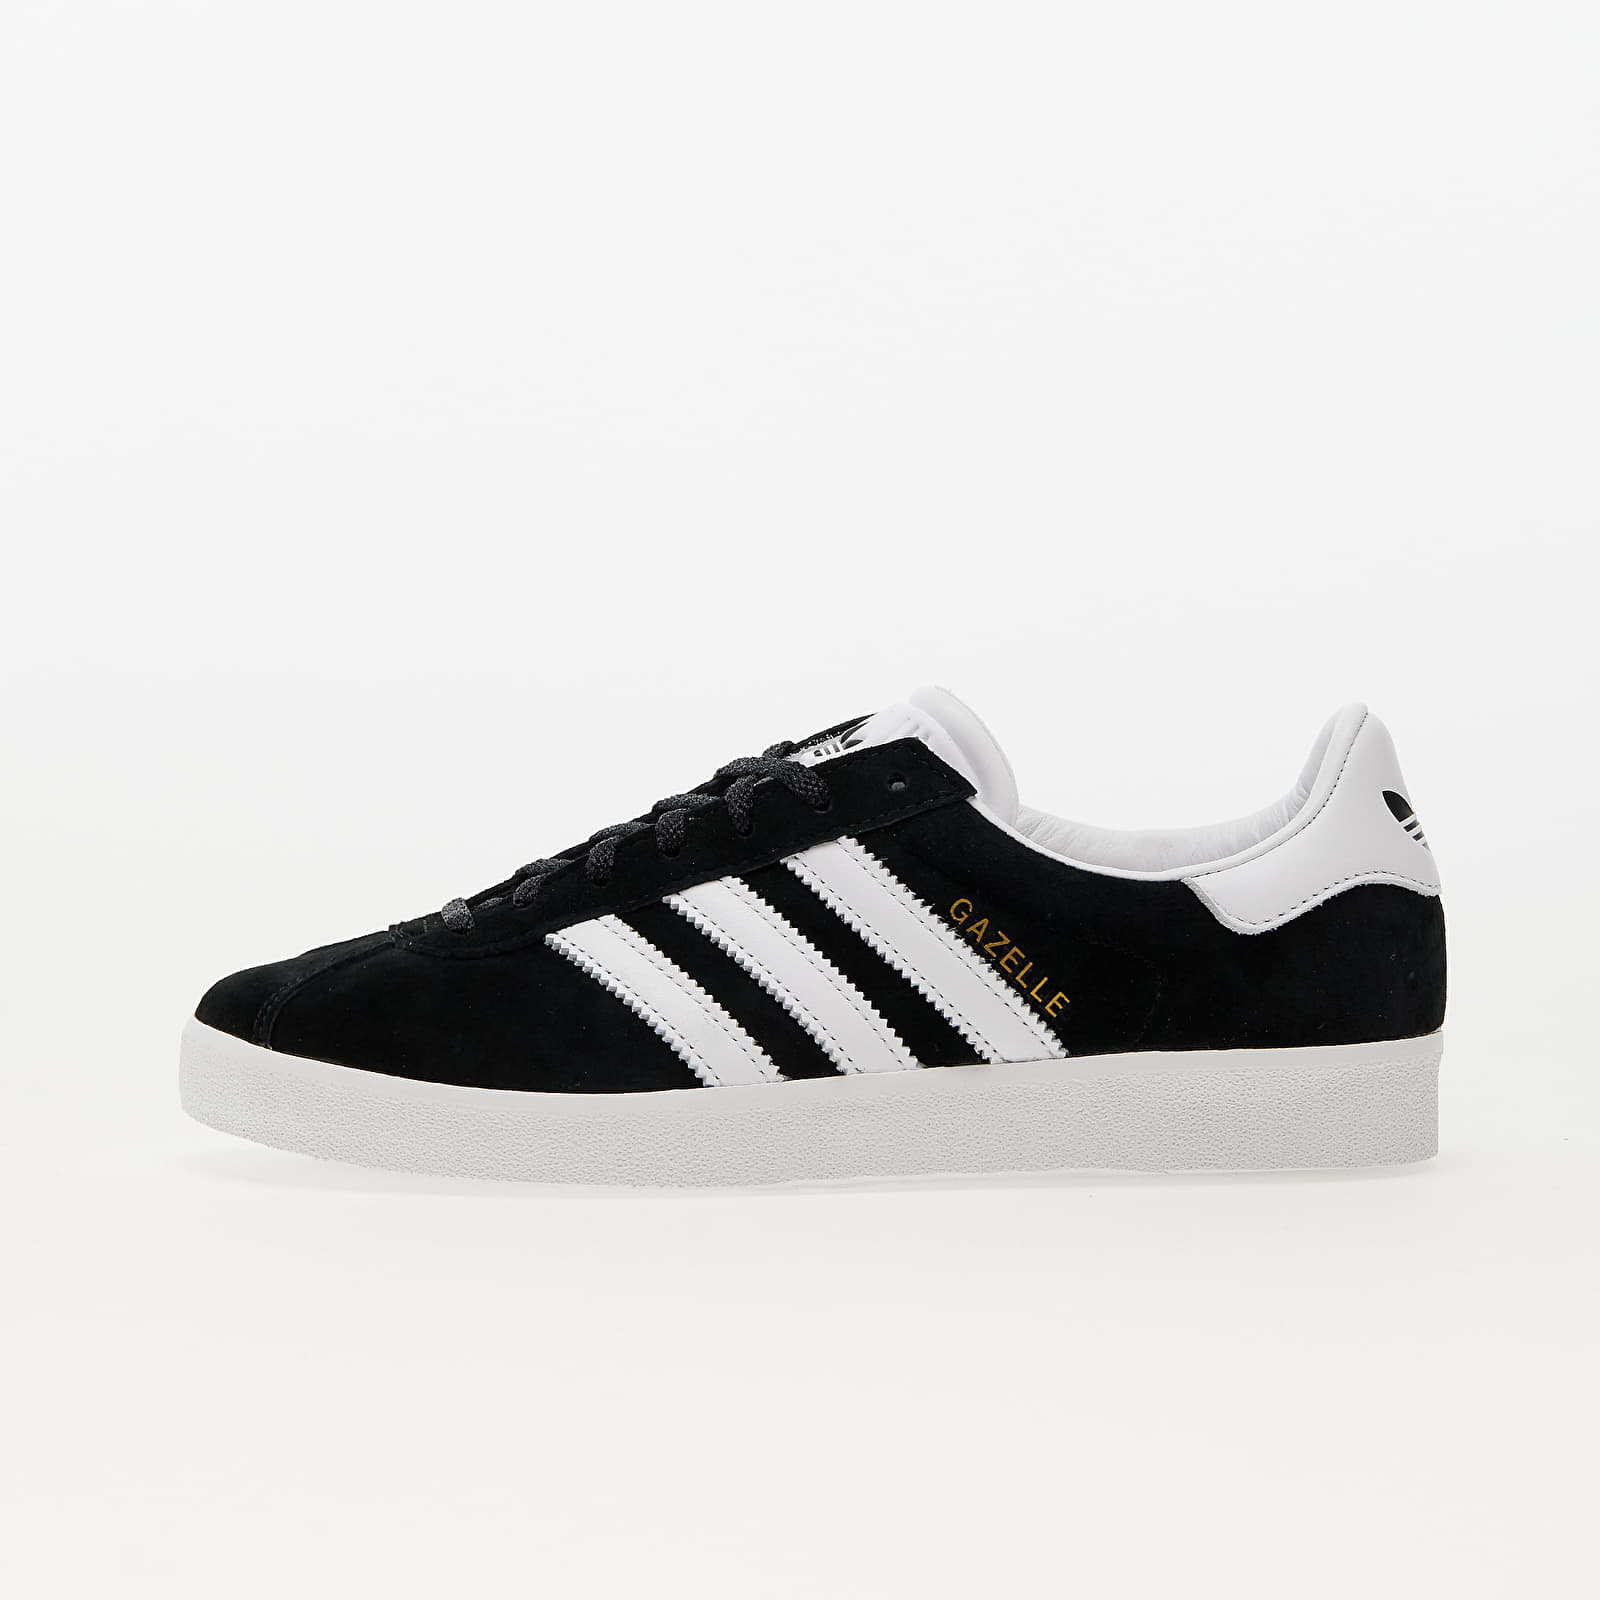 Herren Sneaker und Schuhe adidas Gazelle 85 Core Black/ Ftw White/ Gold Metalic